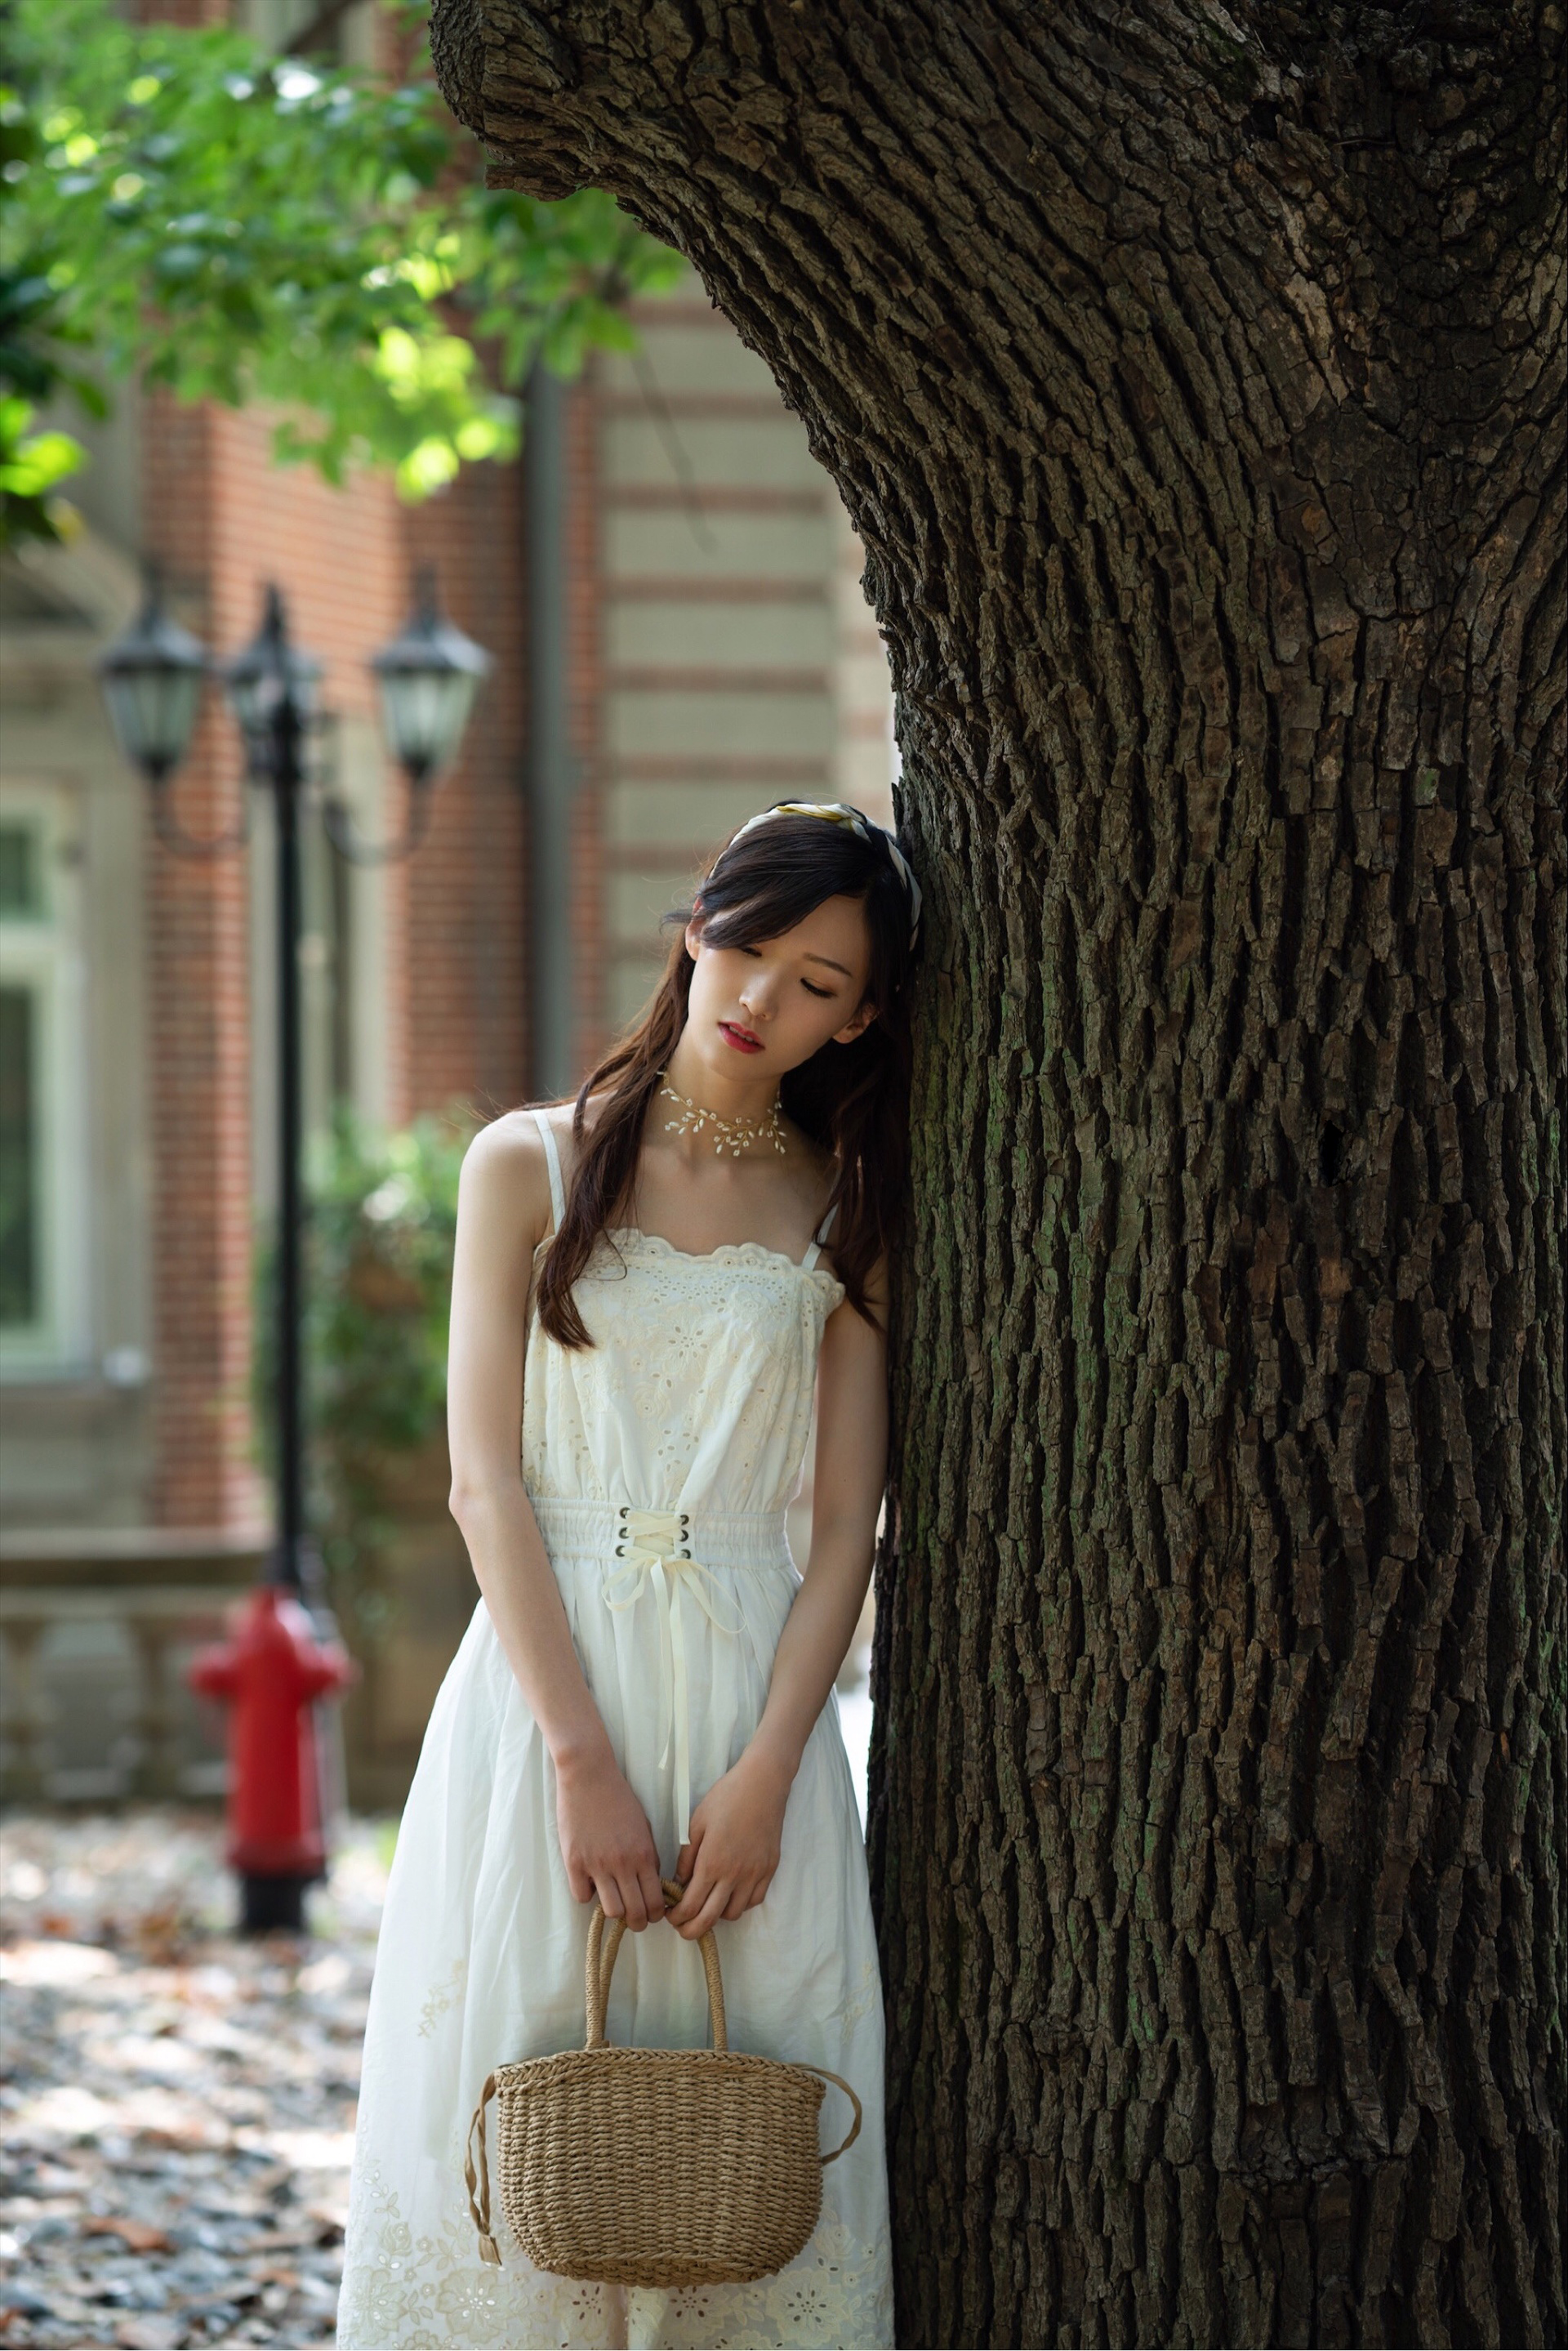 人像摄影 夏季庭院里的白裙 转载自百家号作者:情感观察者